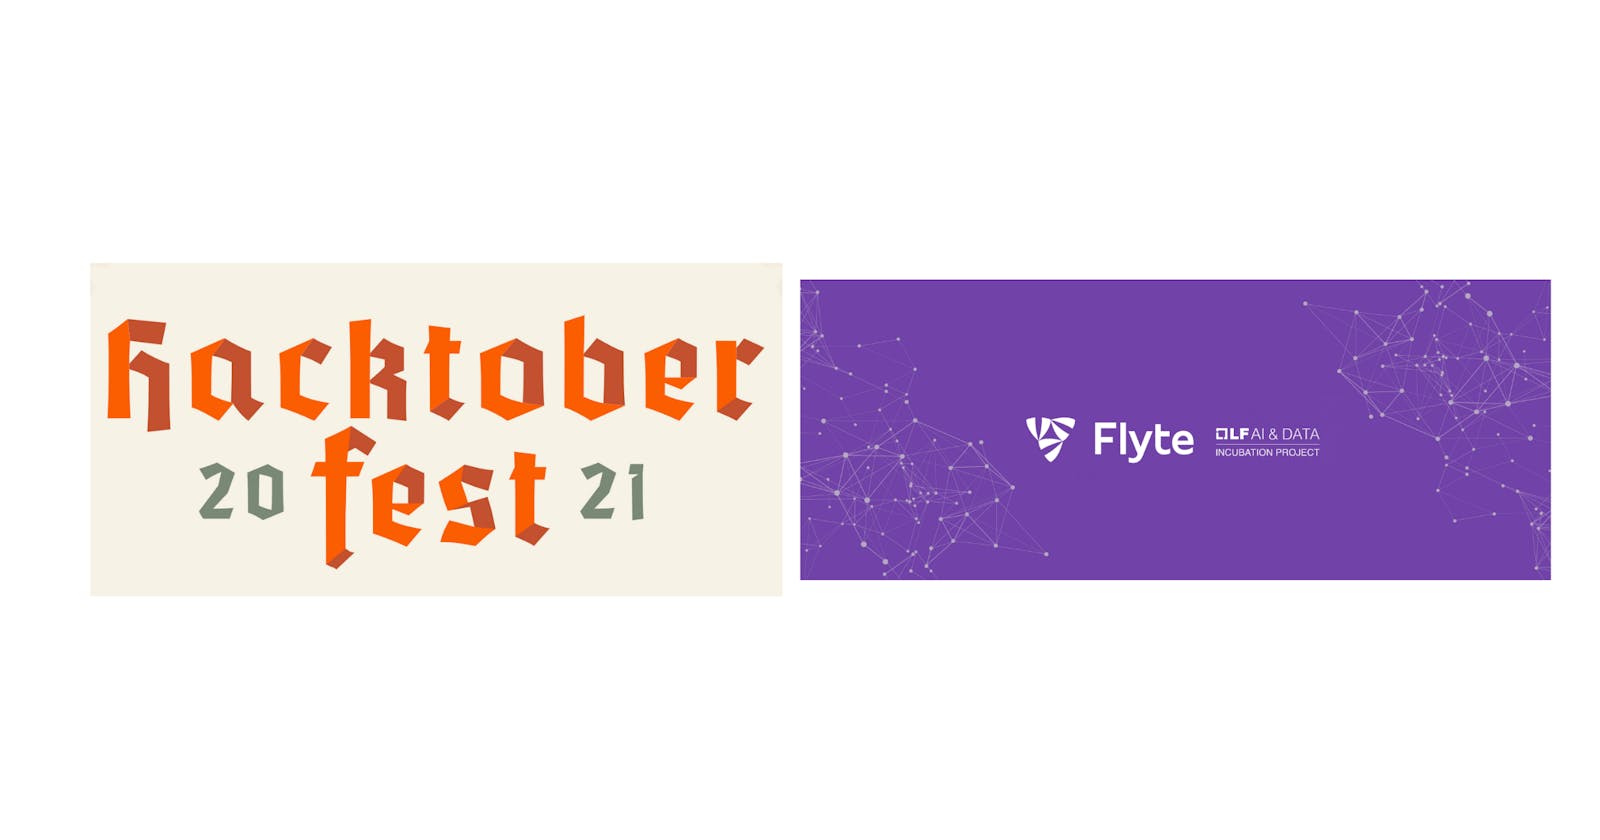 Meet Flyte at Hacktoberfest 2021